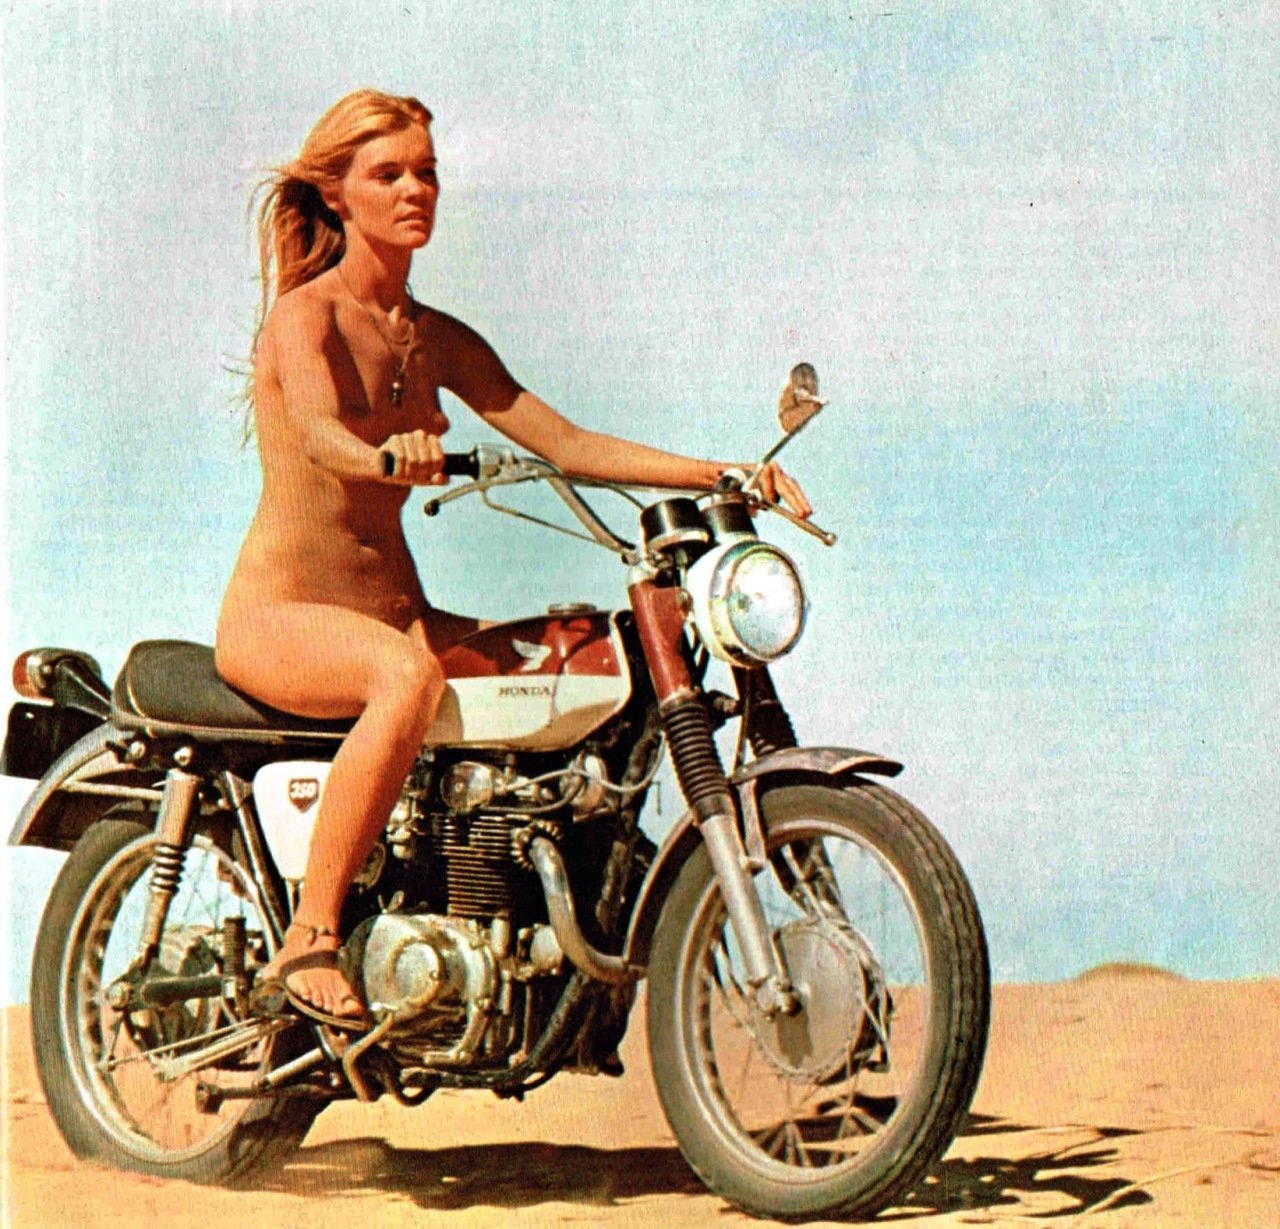 gilda texter, honda, исчезающая точка, 1971, сша, голая девушка.